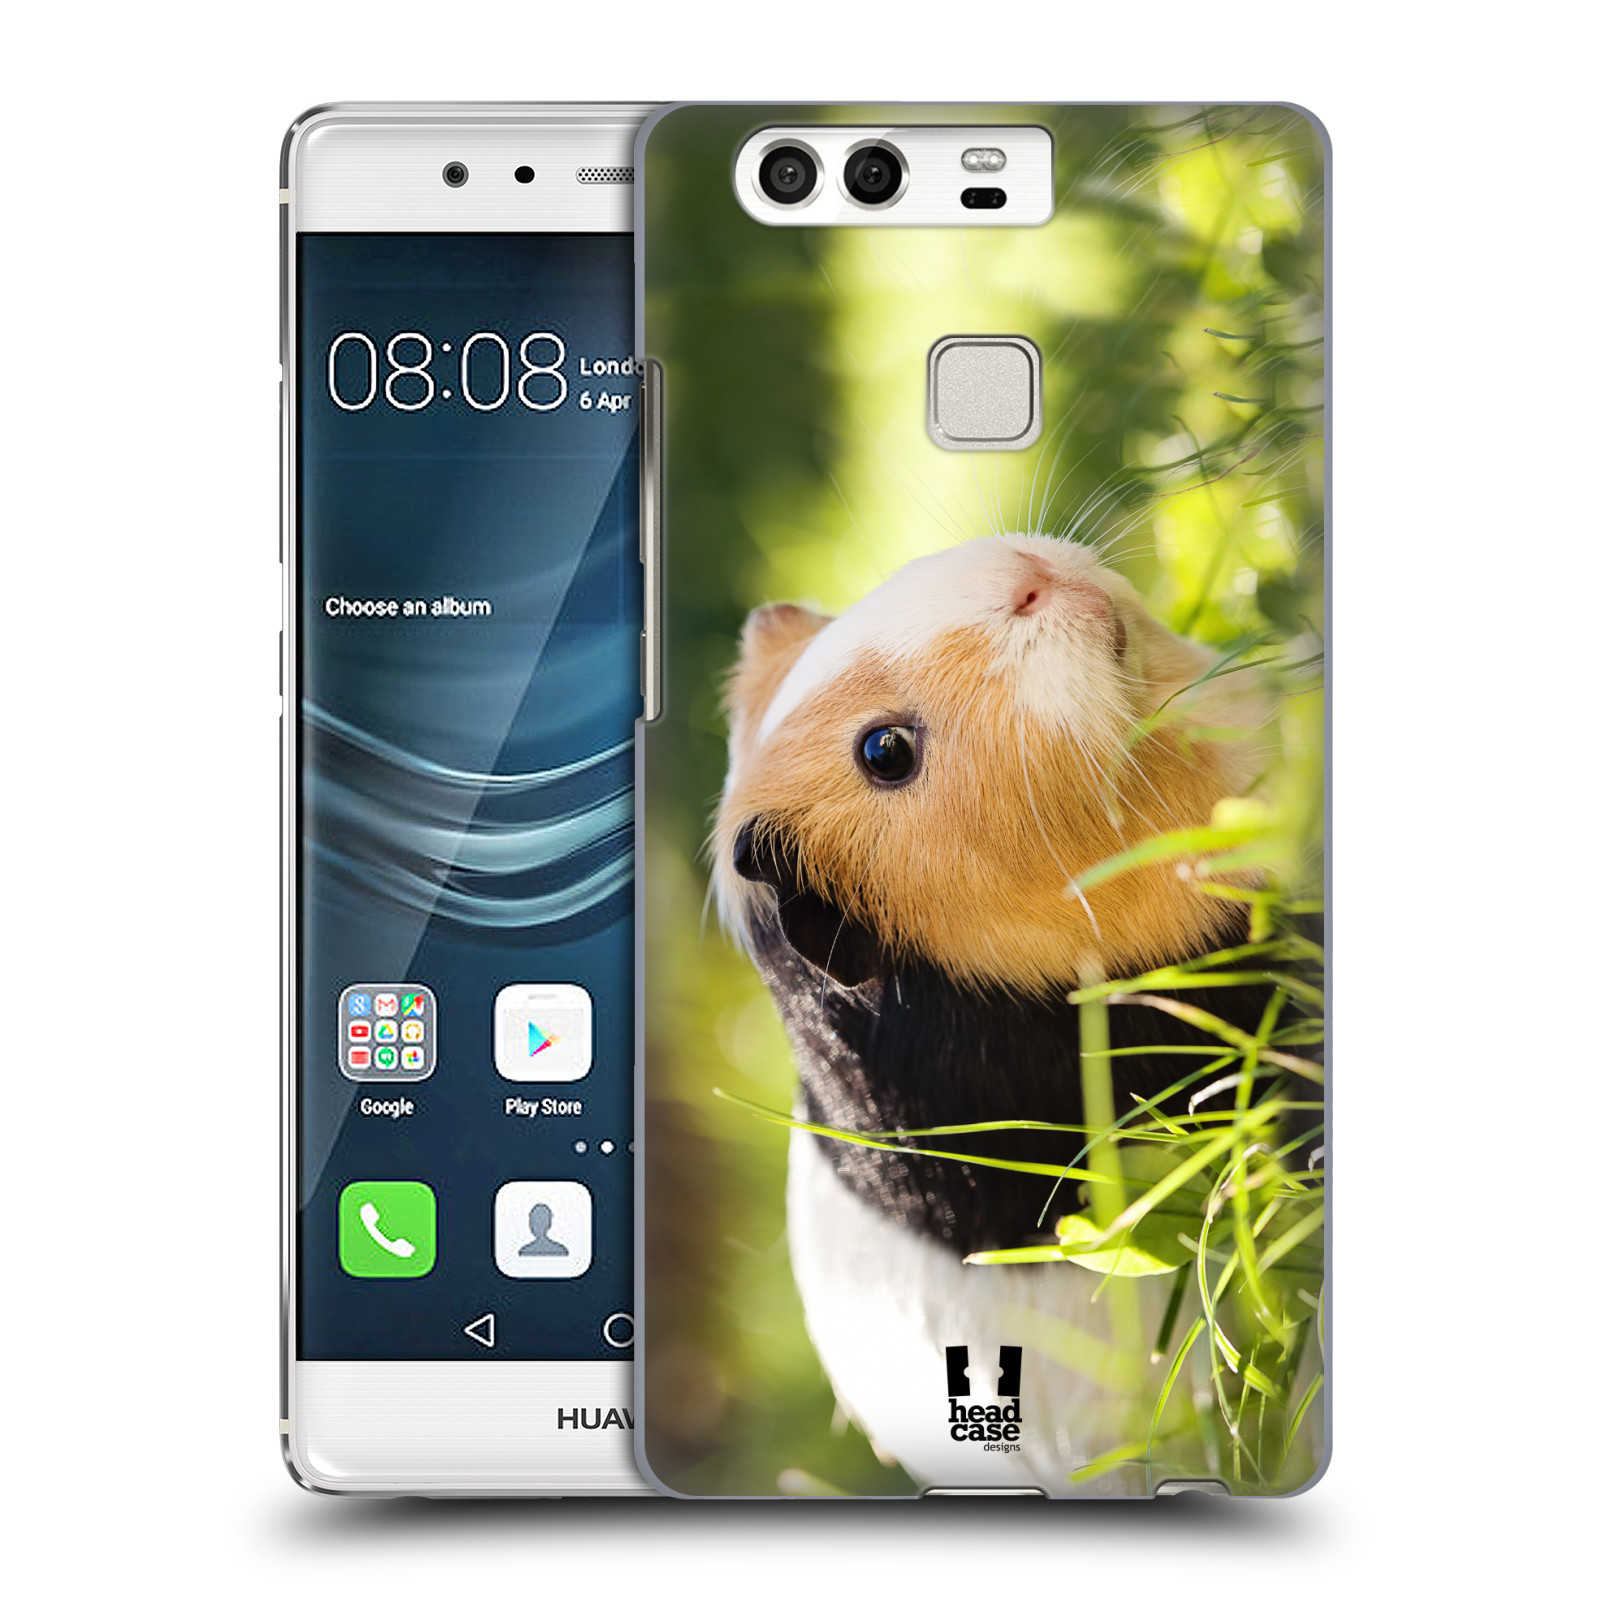 HEAD CASE plastový obal na mobil Huawei P9 / P9 DUAL SIM vzor slavná zvířata foto morče